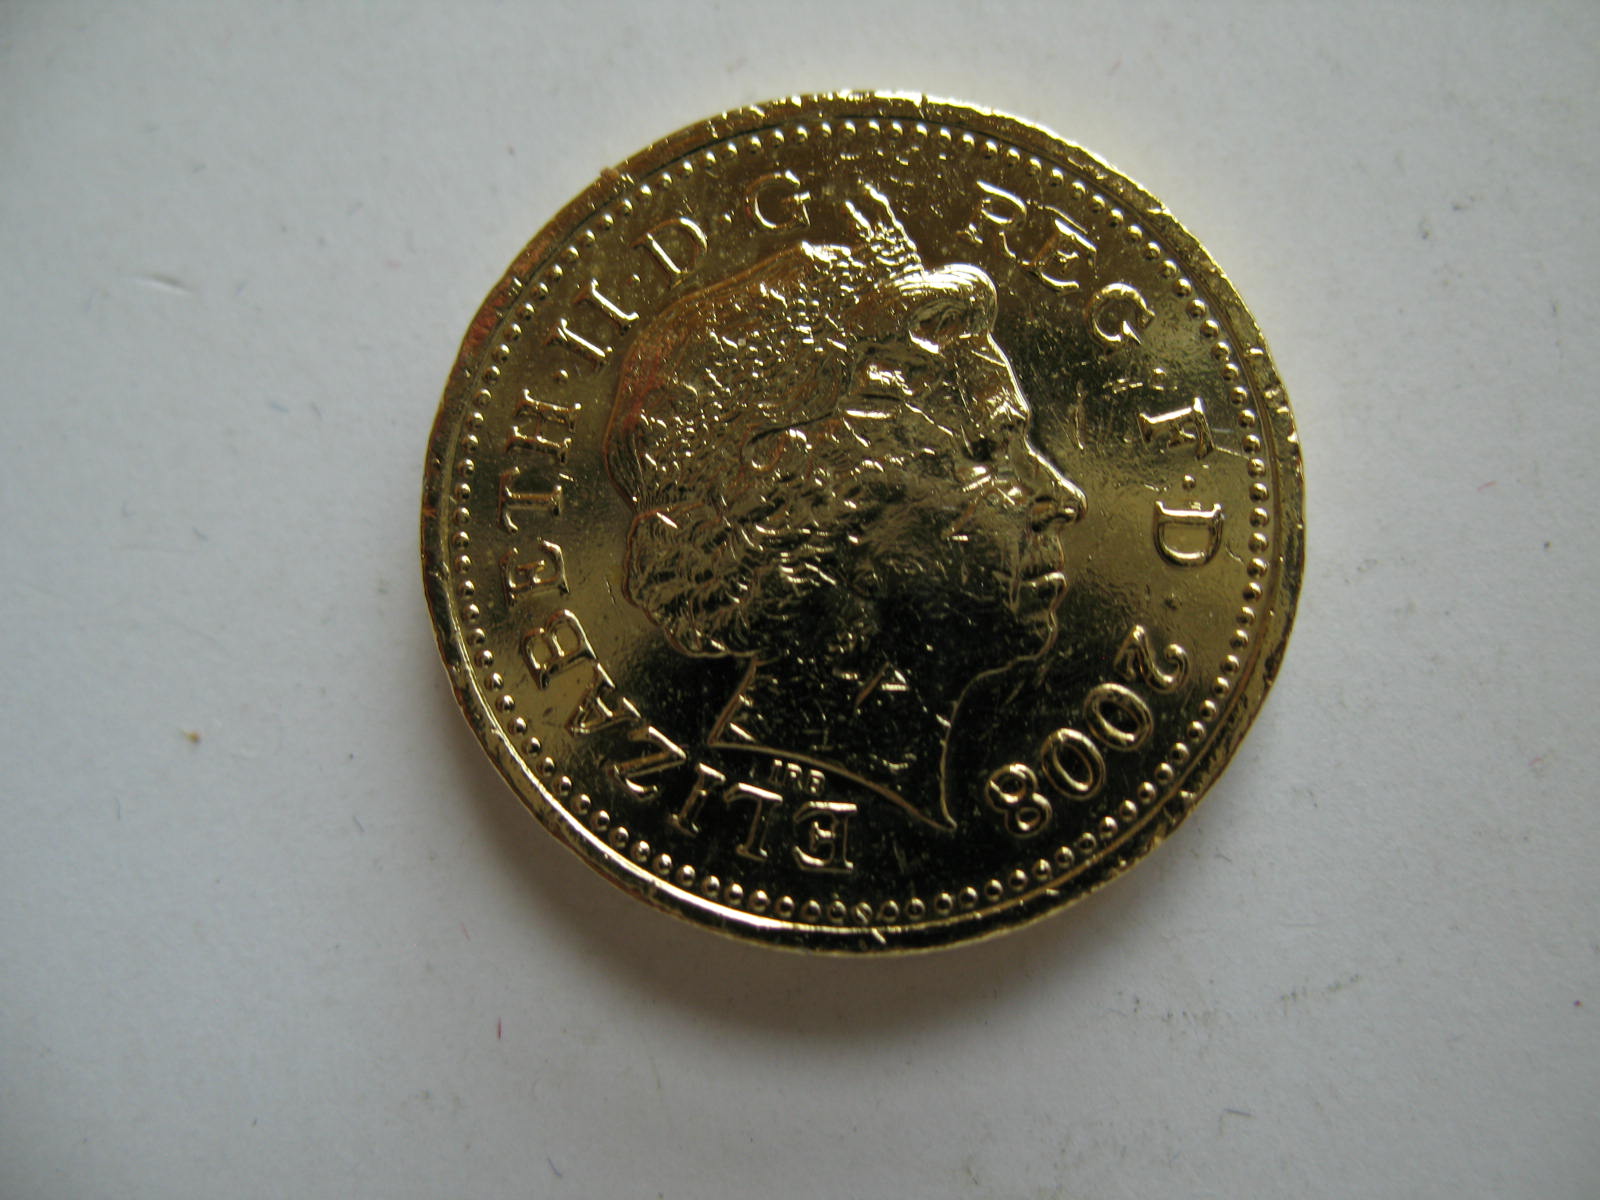 英镑硬币的宏观拍摄高清摄影大图-千库网